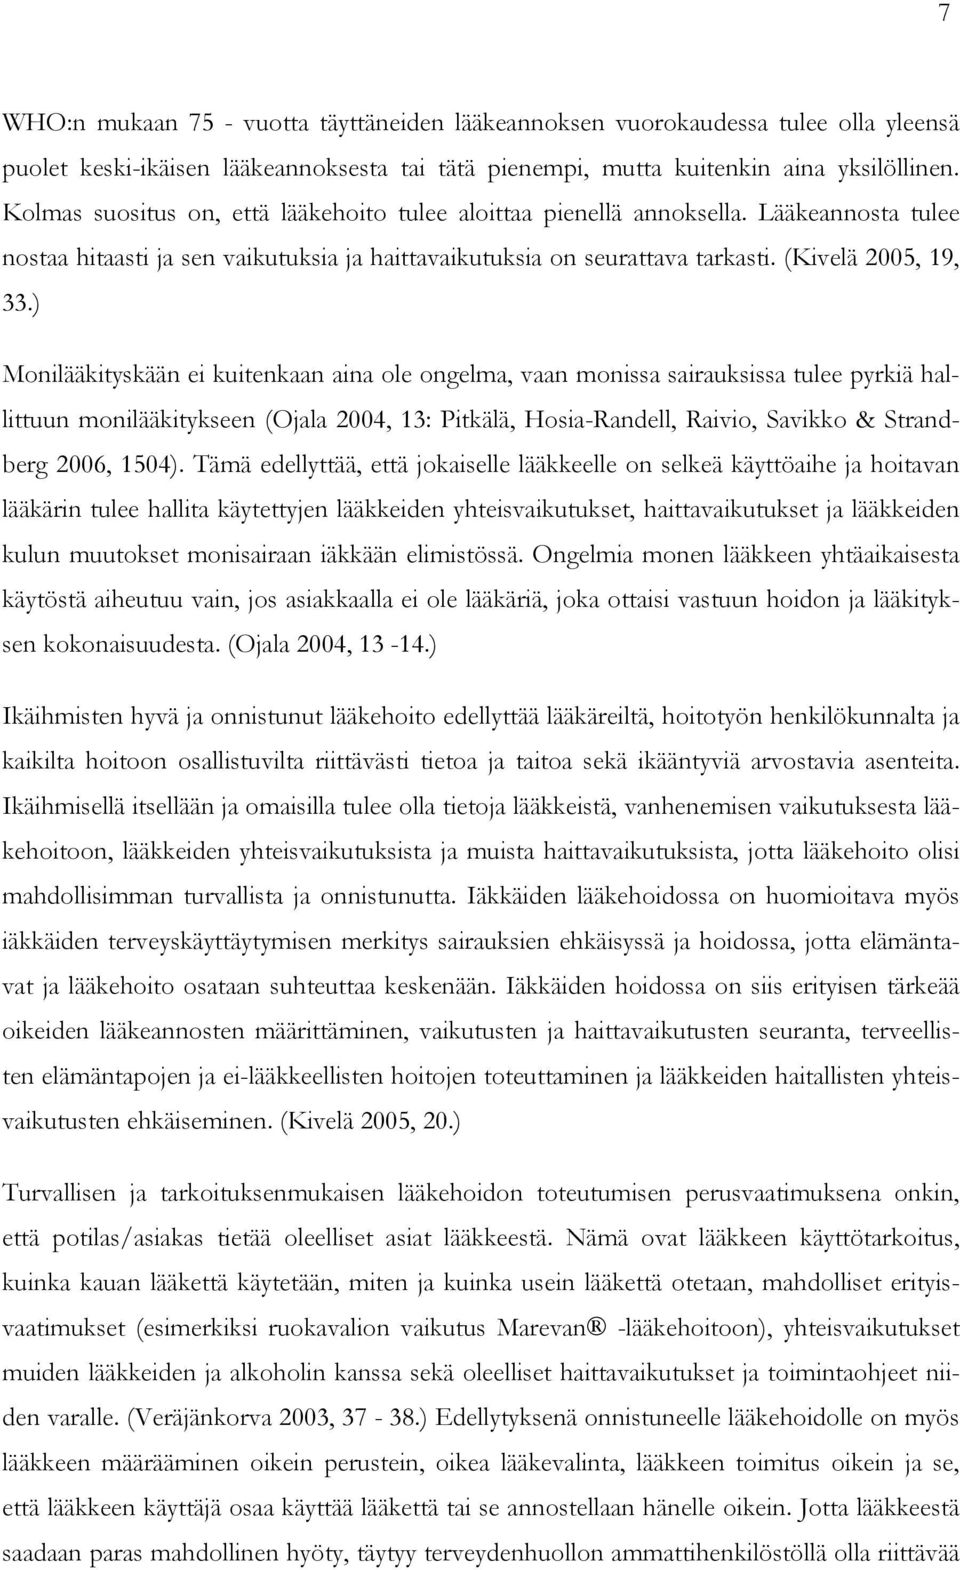 ) Monilääkityskään ei kuitenkaan aina ole ongelma, vaan monissa sairauksissa tulee pyrkiä hallittuun monilääkitykseen (Ojala 2004, 13: Pitkälä, Hosia-Randell, Raivio, Savikko & Strandberg 2006, 1504).